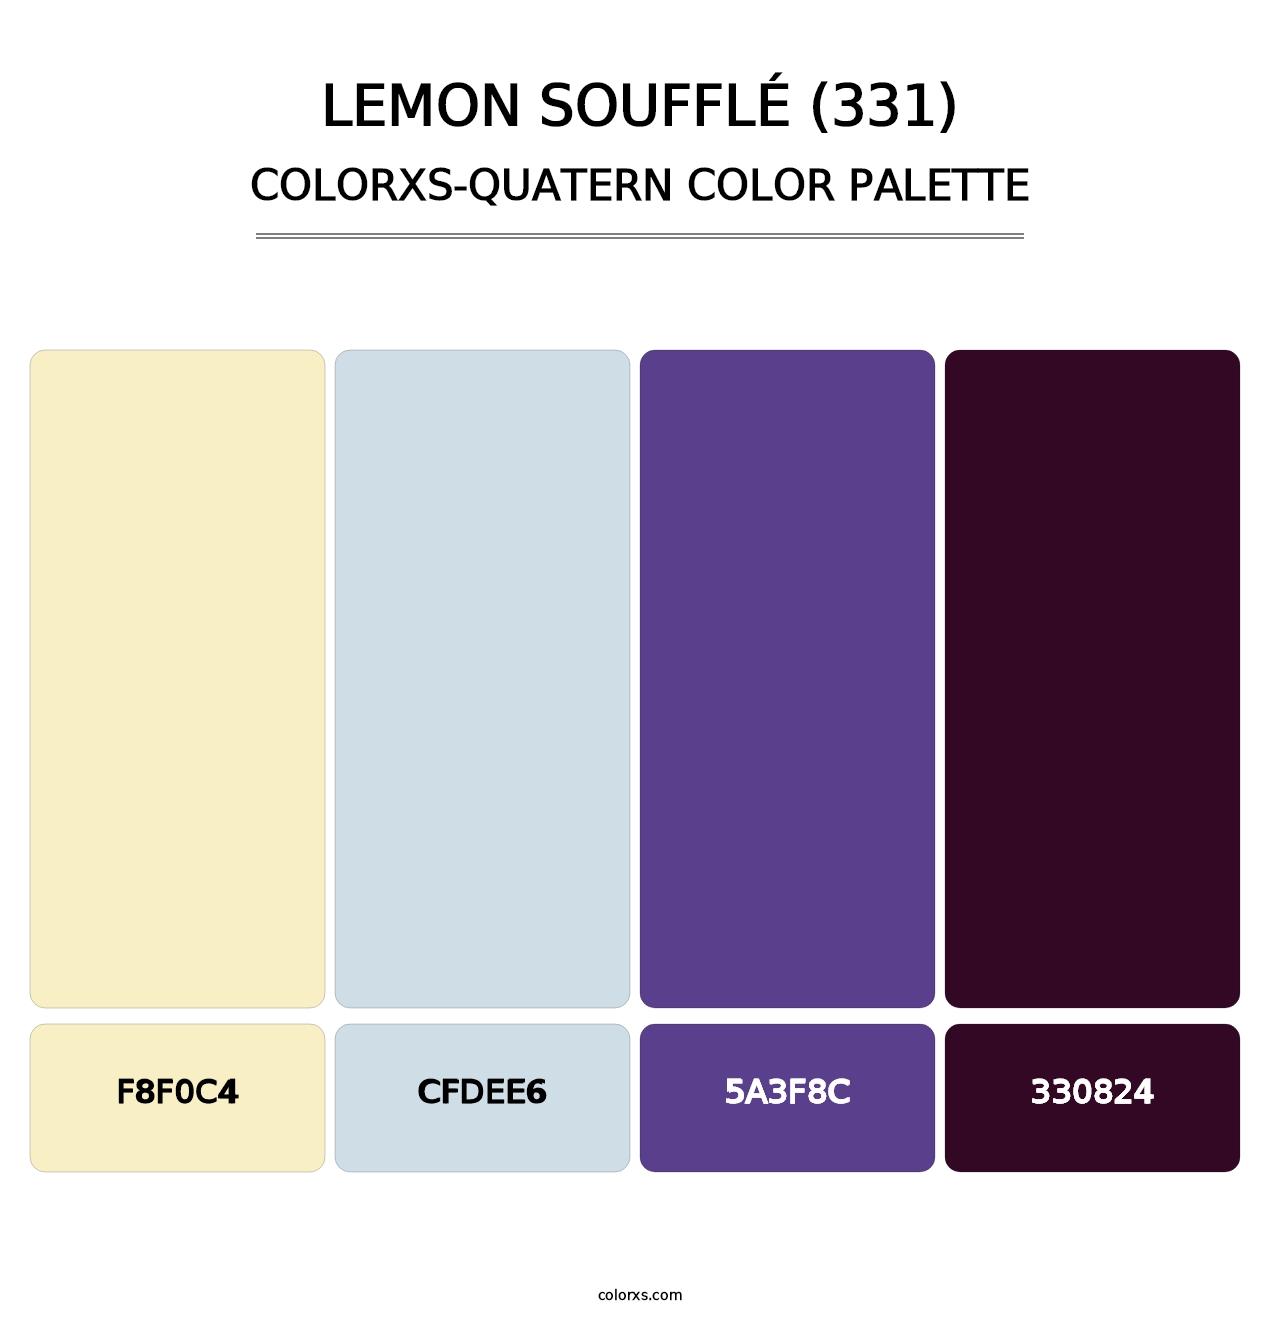 Lemon Soufflé (331) - Colorxs Quatern Palette